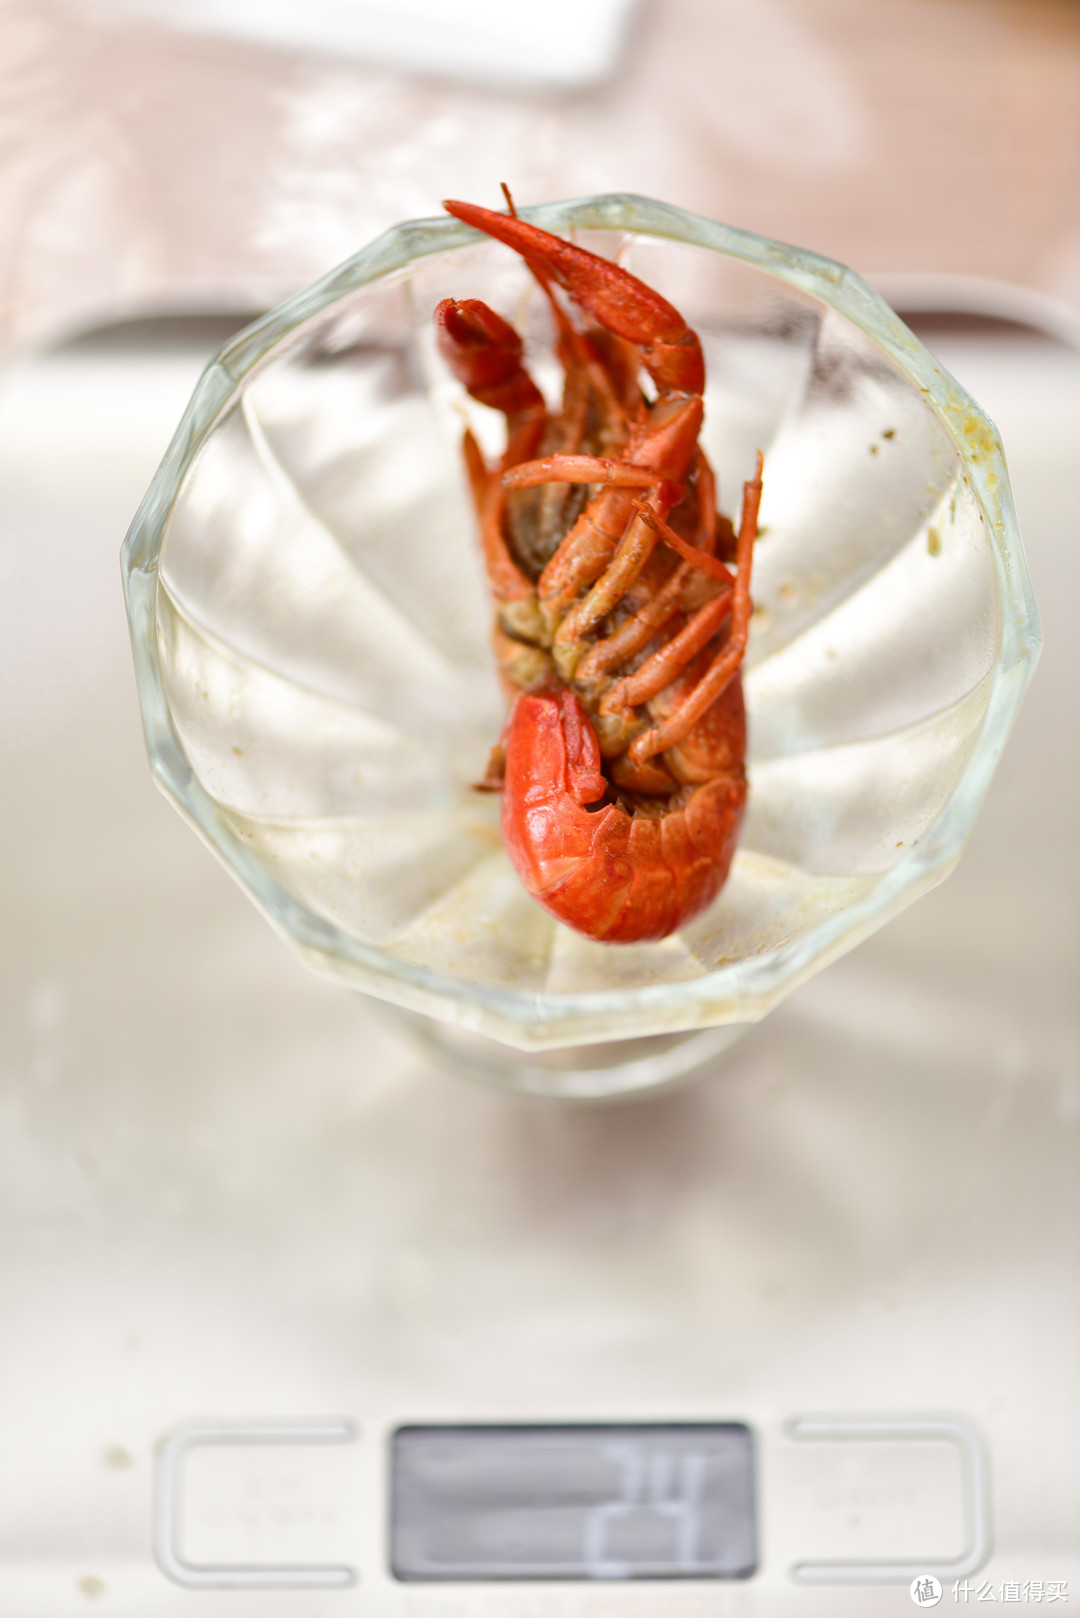 冻熟小龙虾怎么选？——从鲜虾处理开始让你做个麻辣小龙虾烹食专家